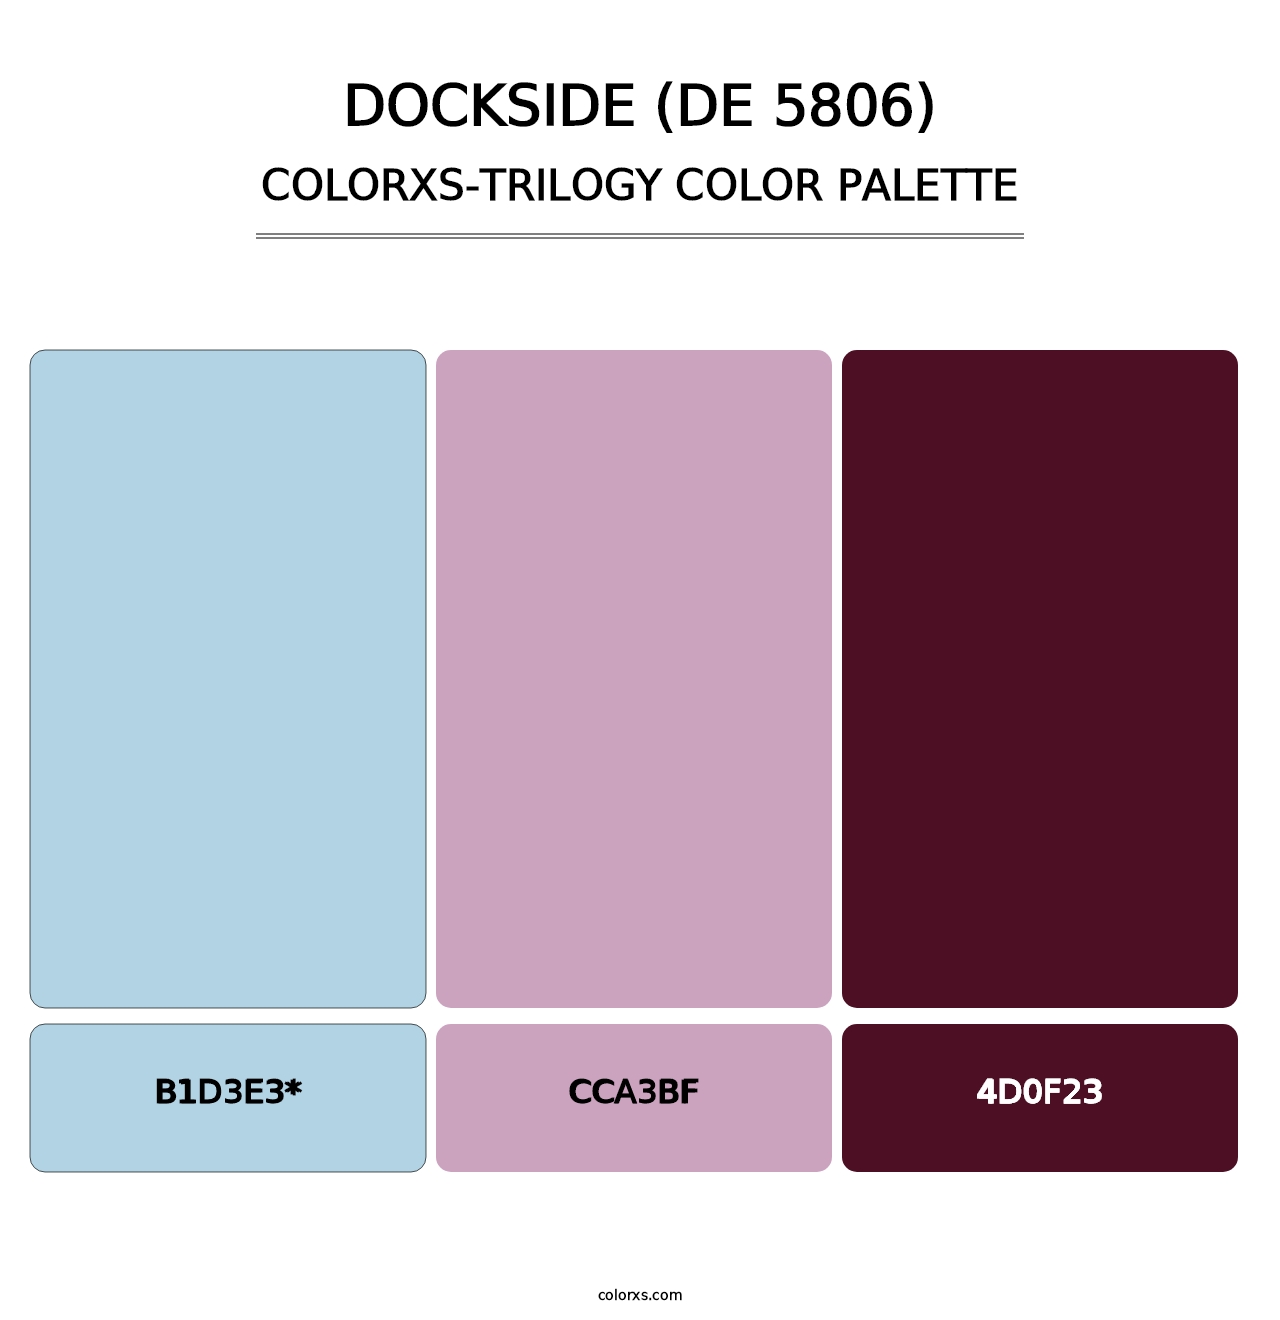 Dockside (DE 5806) - Colorxs Trilogy Palette